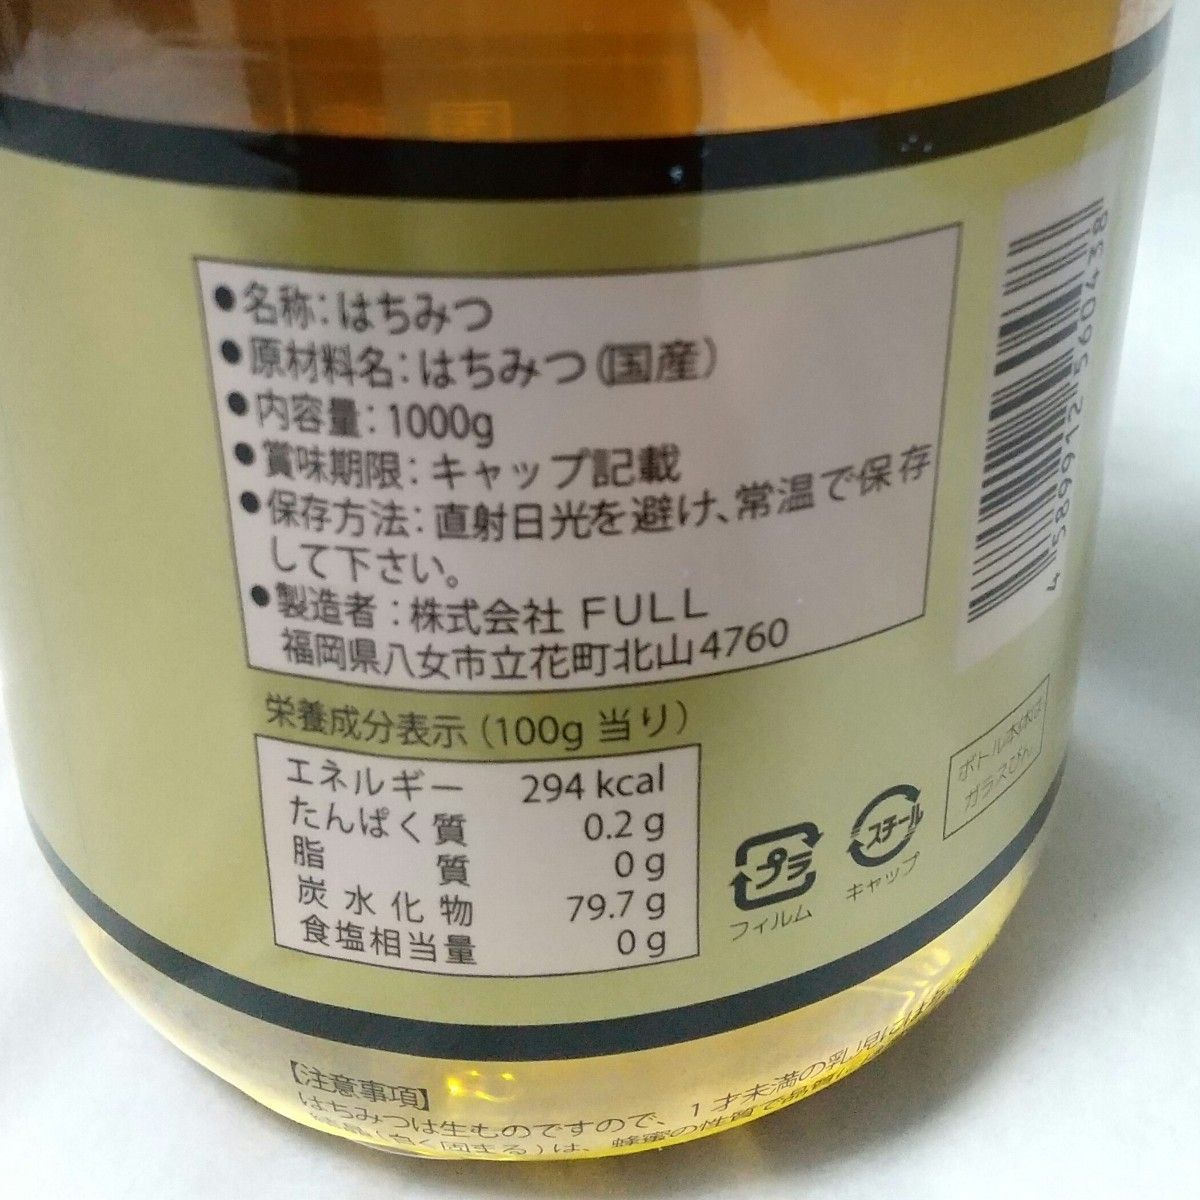 新品未開封国産純粋はちみつ 1000g 1kg 日本製 はちみつ ハチミツ ハニー HONEY 蜂蜜 瓶詰 国産蜂蜜 国産ハチミツ